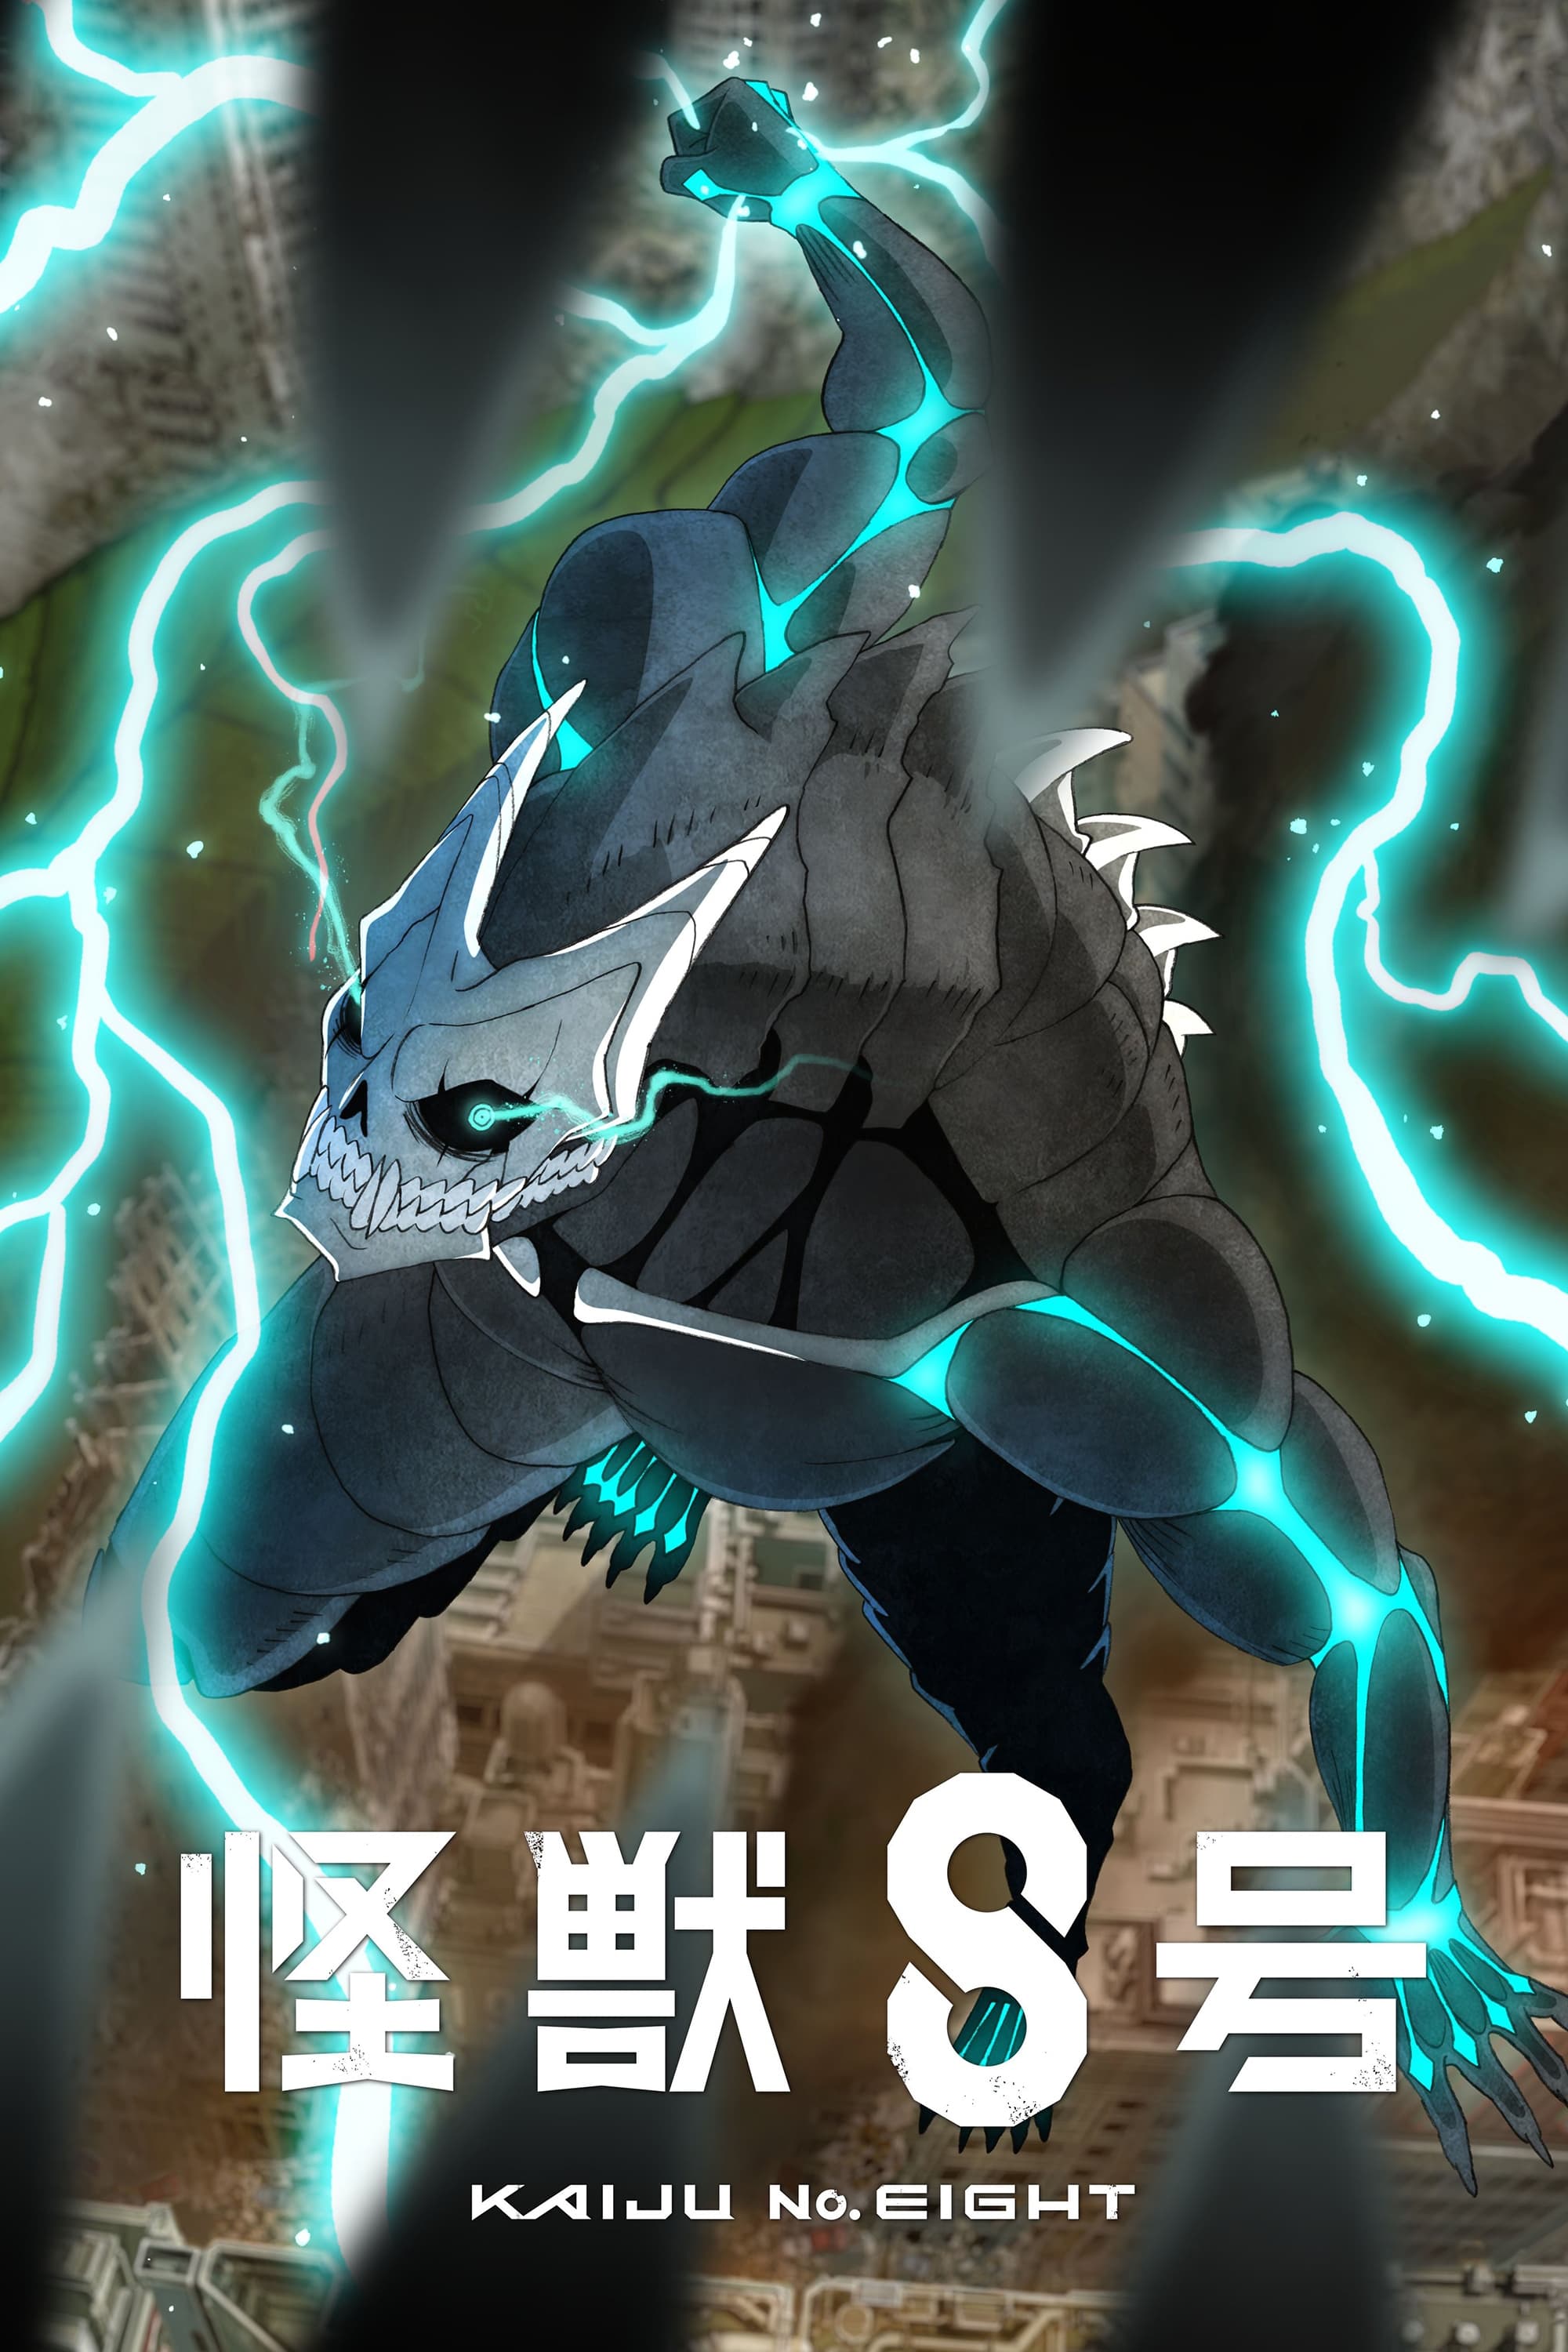 Kaiju No. 8 Season 1